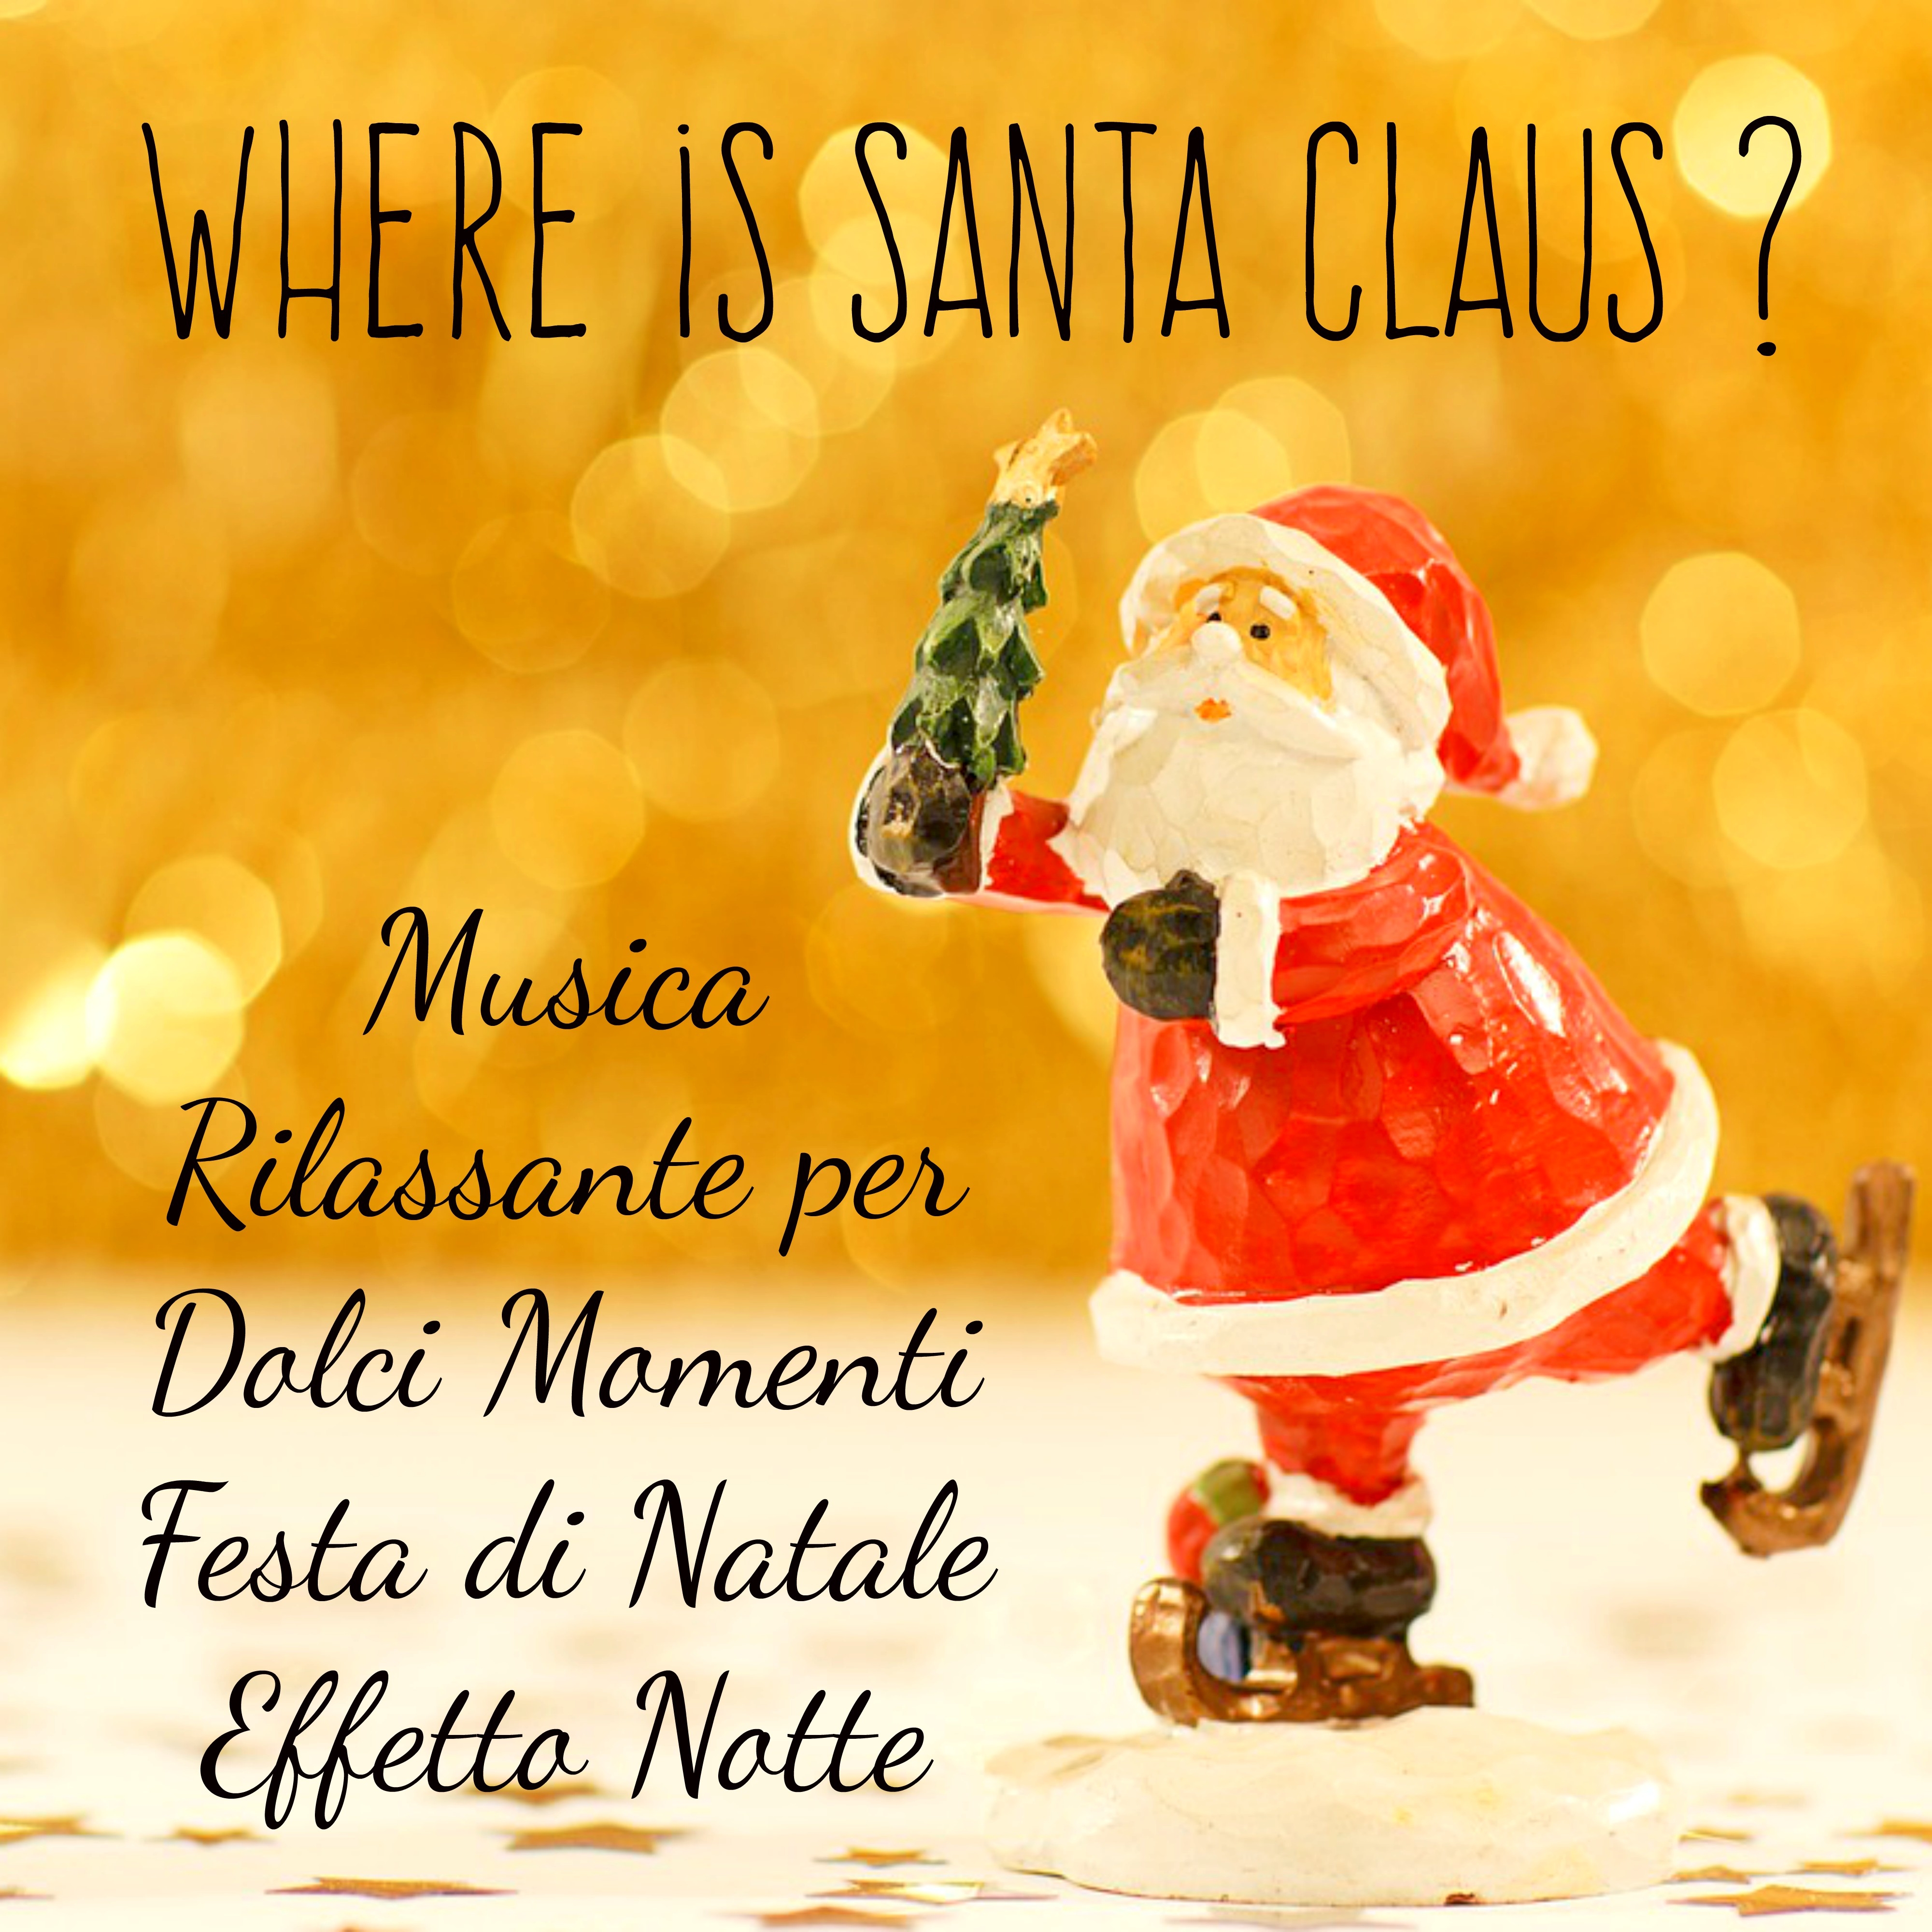 Where is Santa Claus?